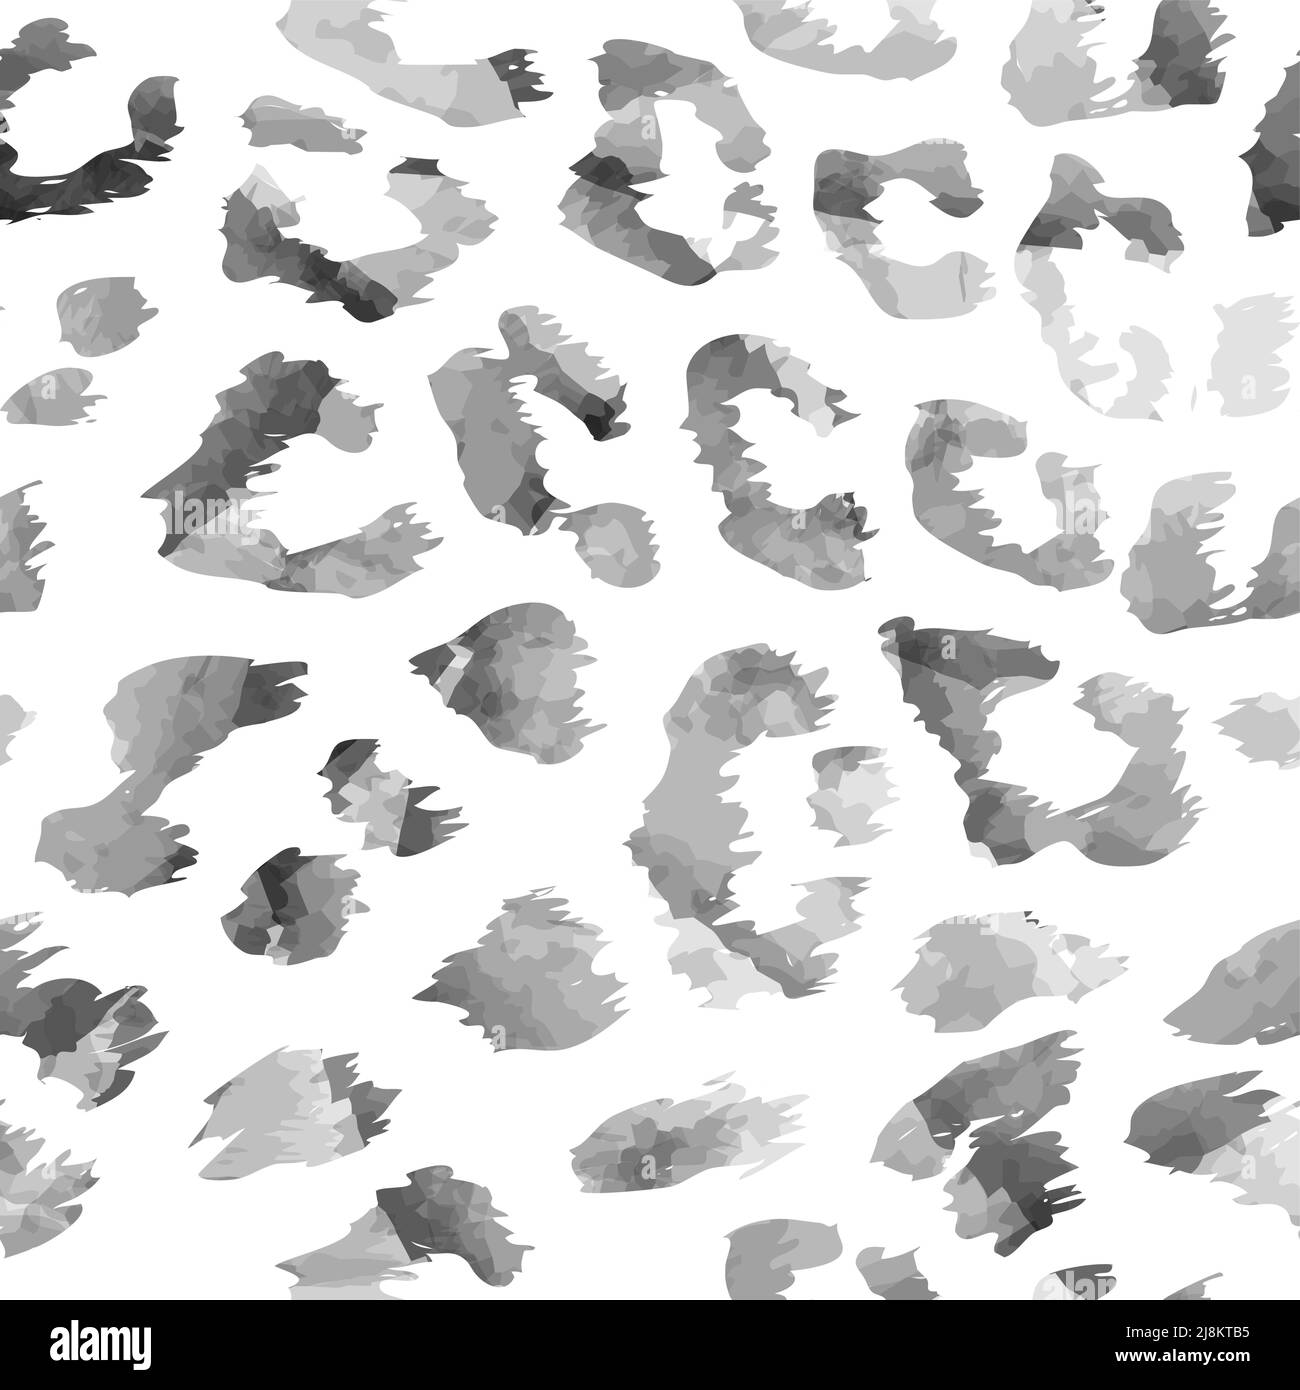 Leopard Aquarell nahtlose Muster-Design in schwarz-weißen Farben, lustige monochrome Zeichnung nahtlose Muster. Schriftzug Poster oder T-Shirt Textil g Stock Vektor